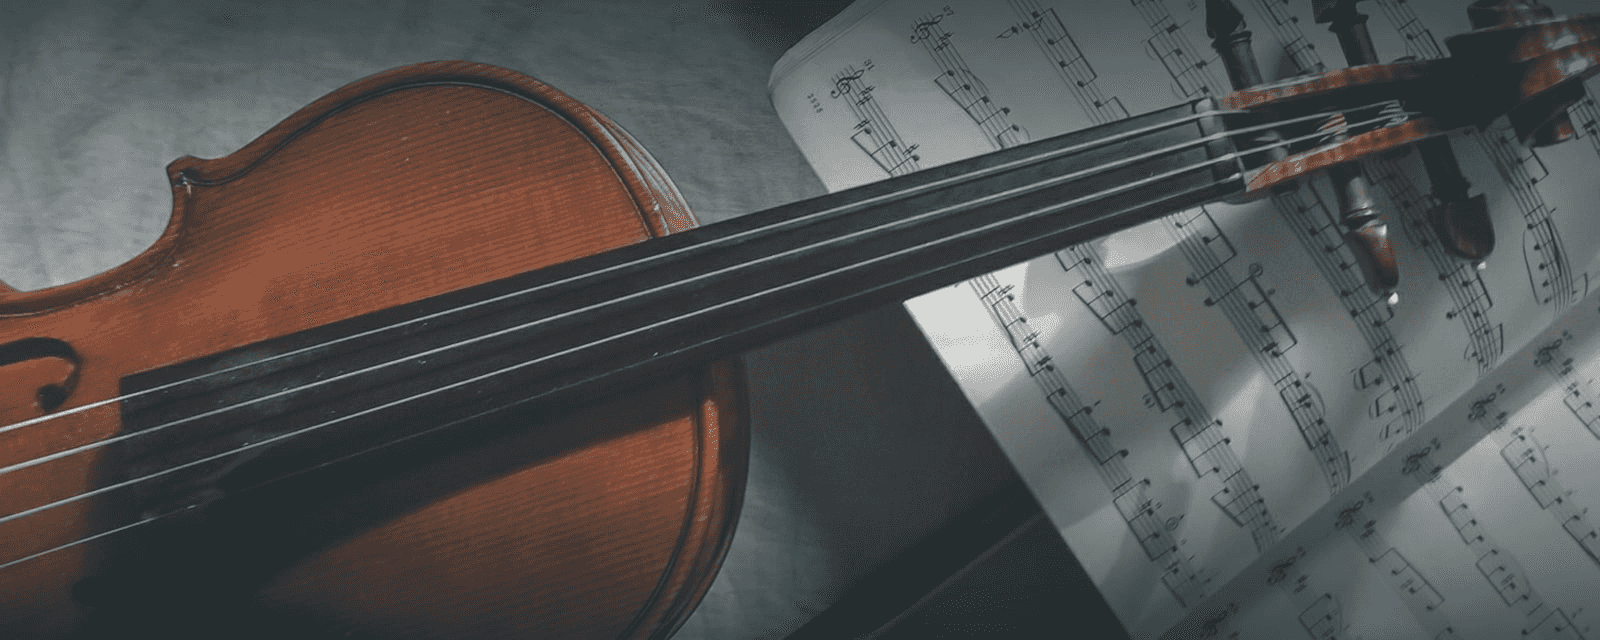 Violinunterricht für Anfänger und Fortgeschrittene